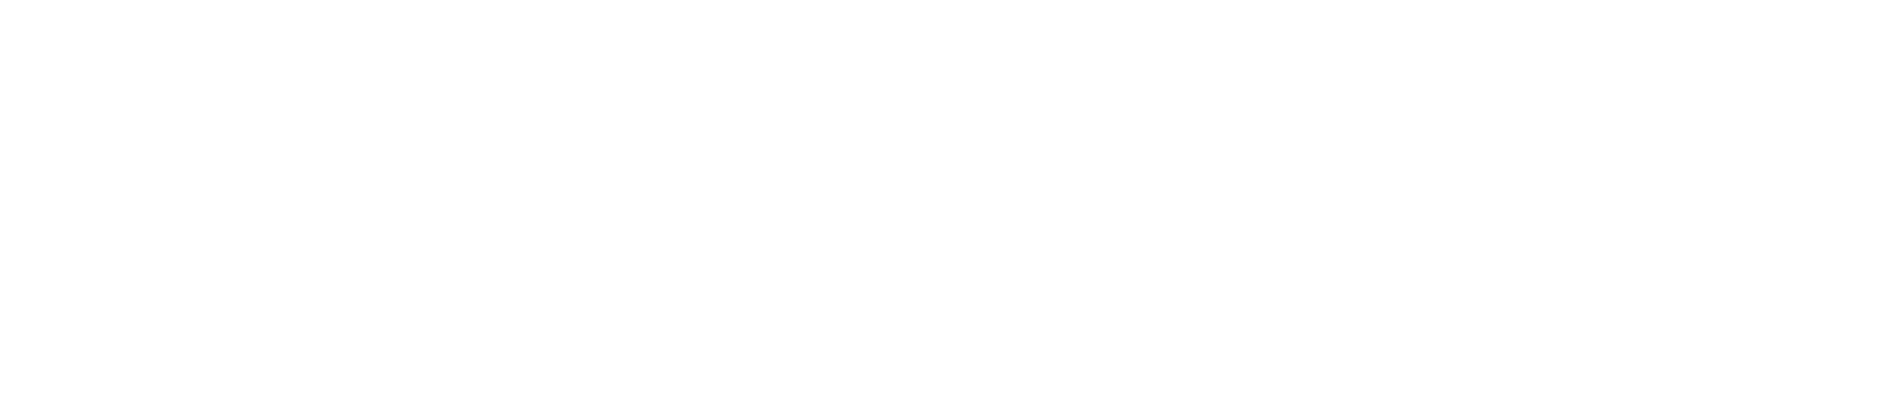 nmc health_r_tag_horizontal_rgb_reverse